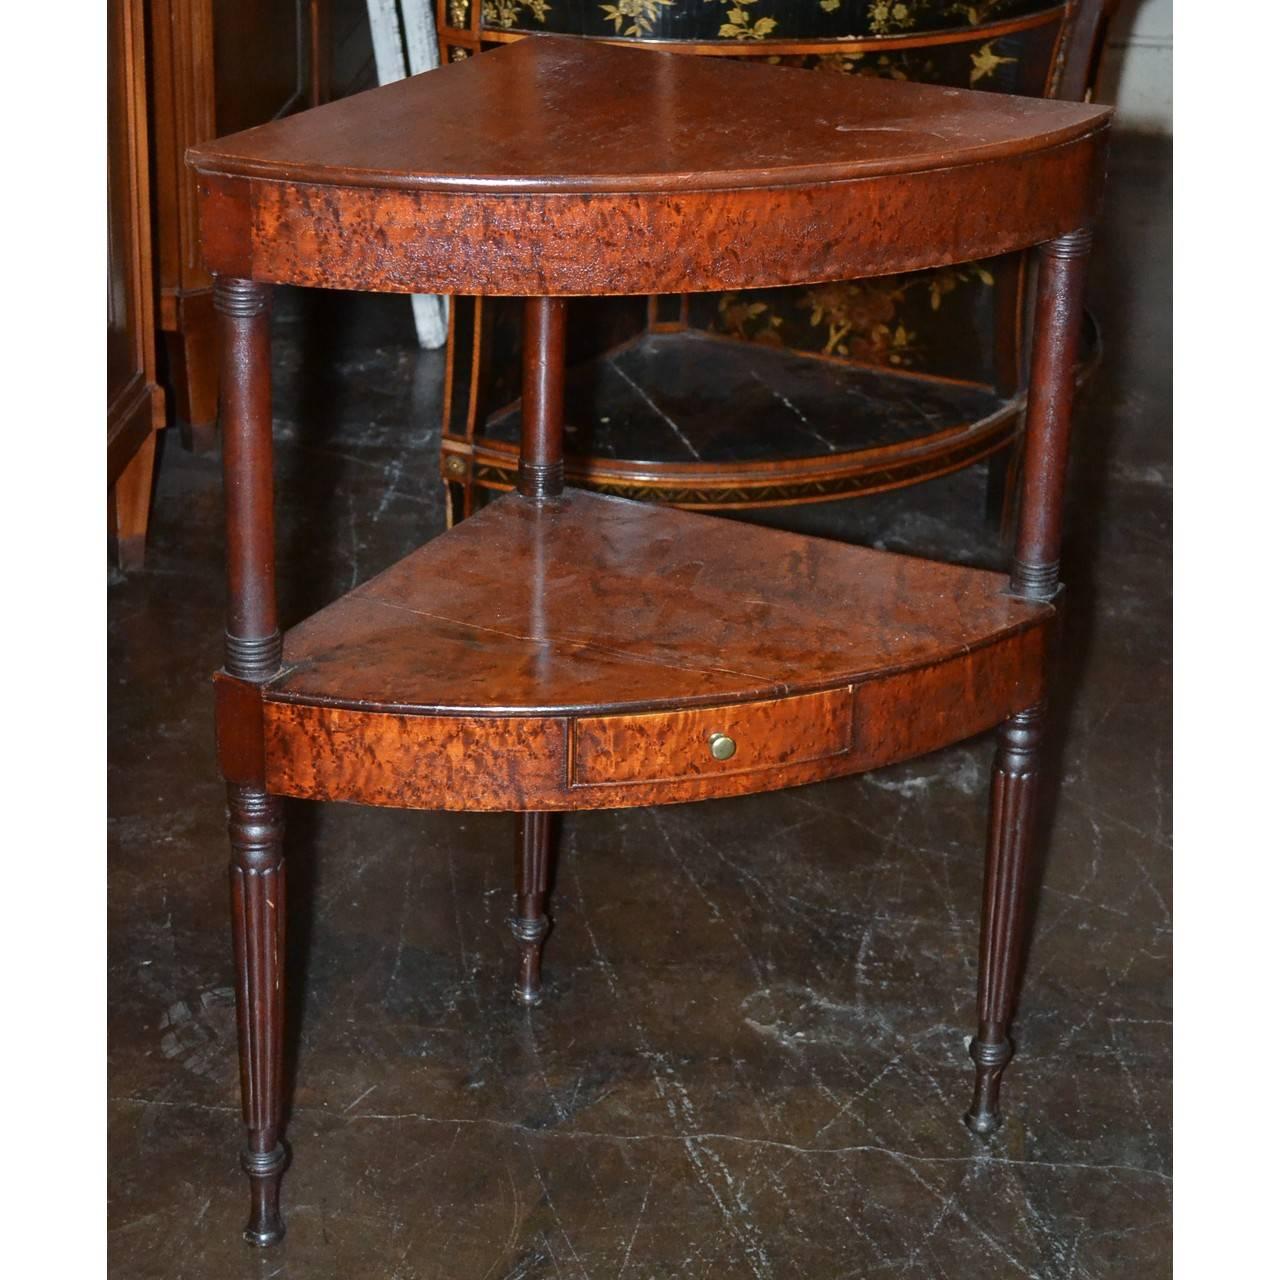 antique corner table